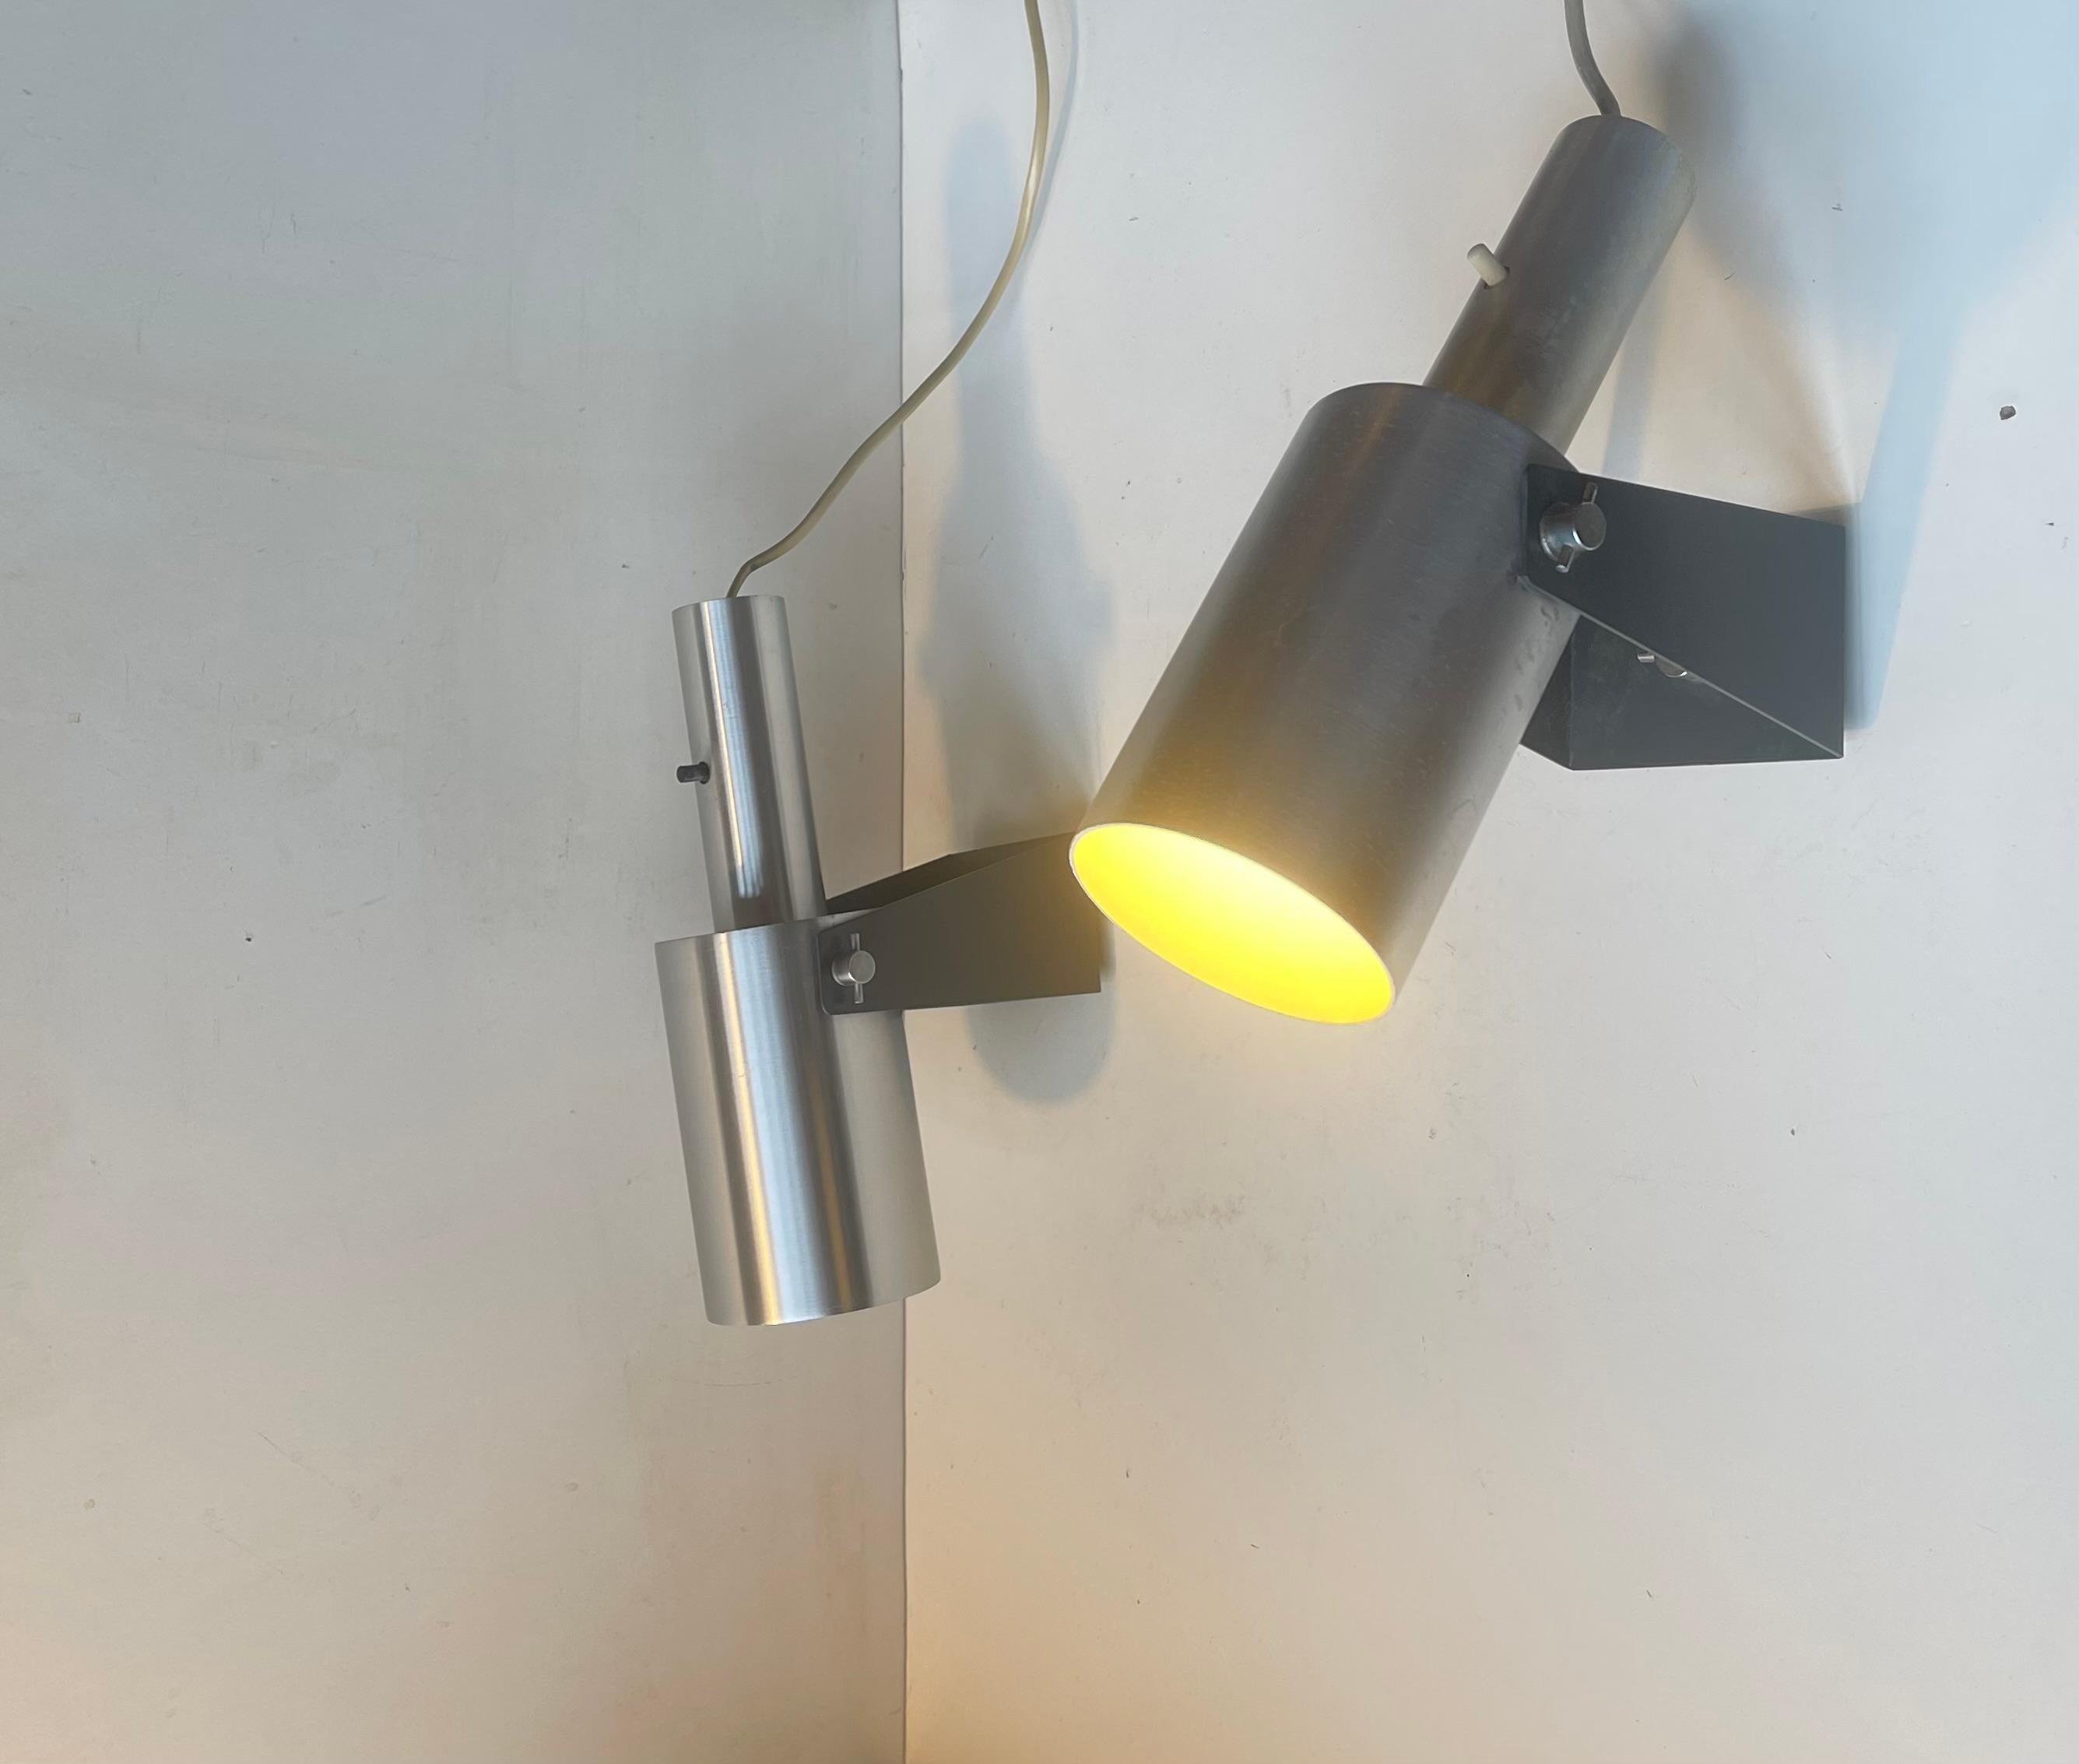 Aluminum Minimalist Sonet Wall Lamps by Hans Peter Jeppesen for Fog & Mørup, 1960s For Sale